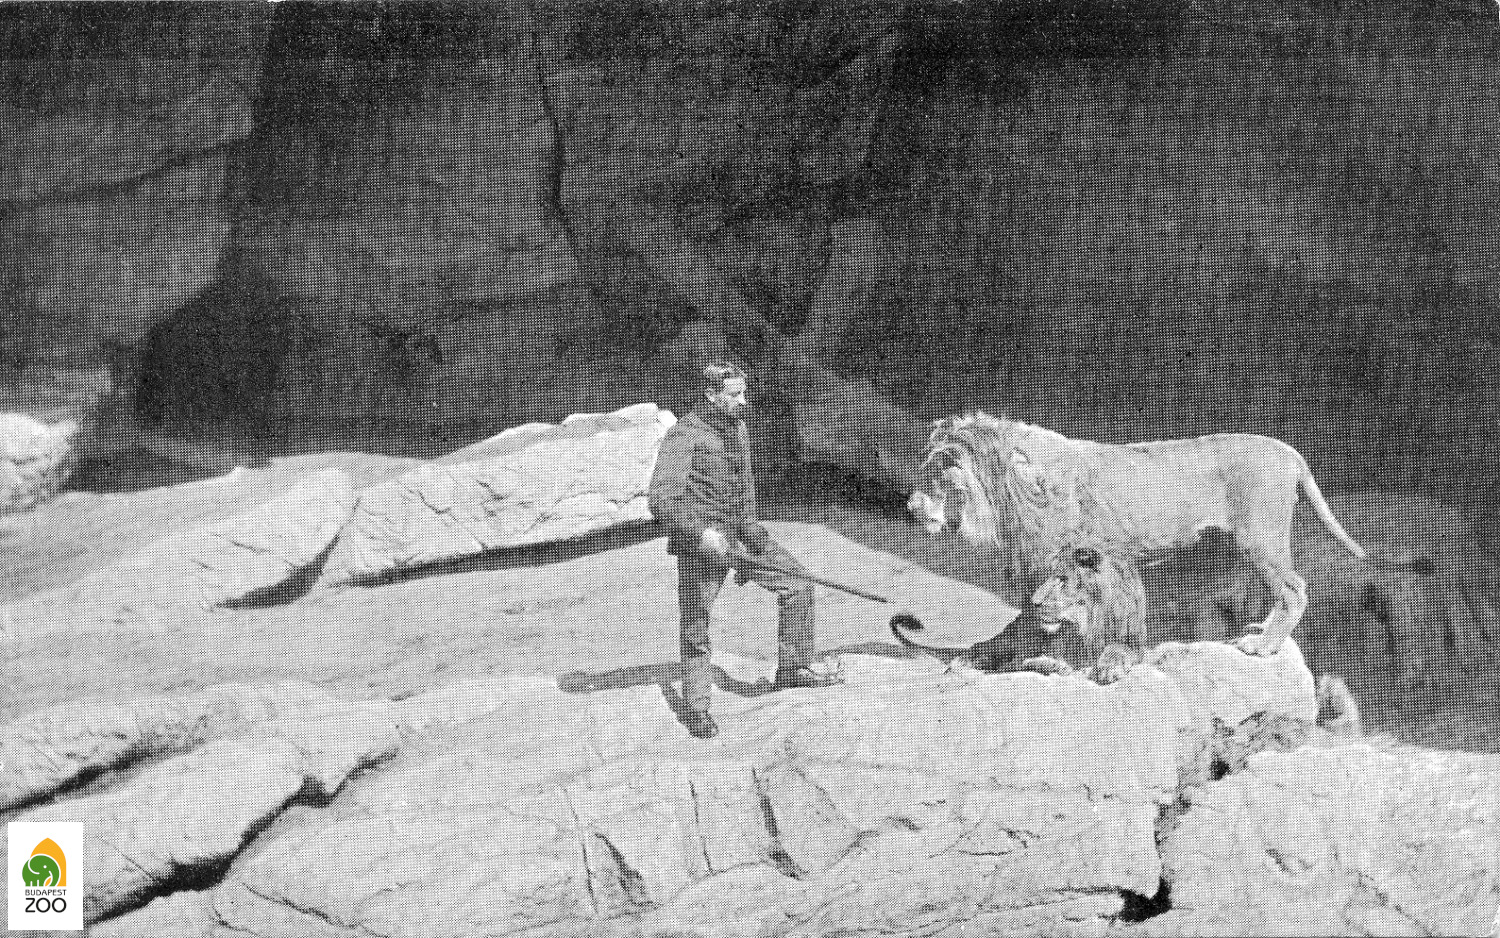 05 - Celesto Guglielmani, az oroszlánok olasz származású híres gondozója egyik kedvencével. A kép az 1910-es években készülhetett 